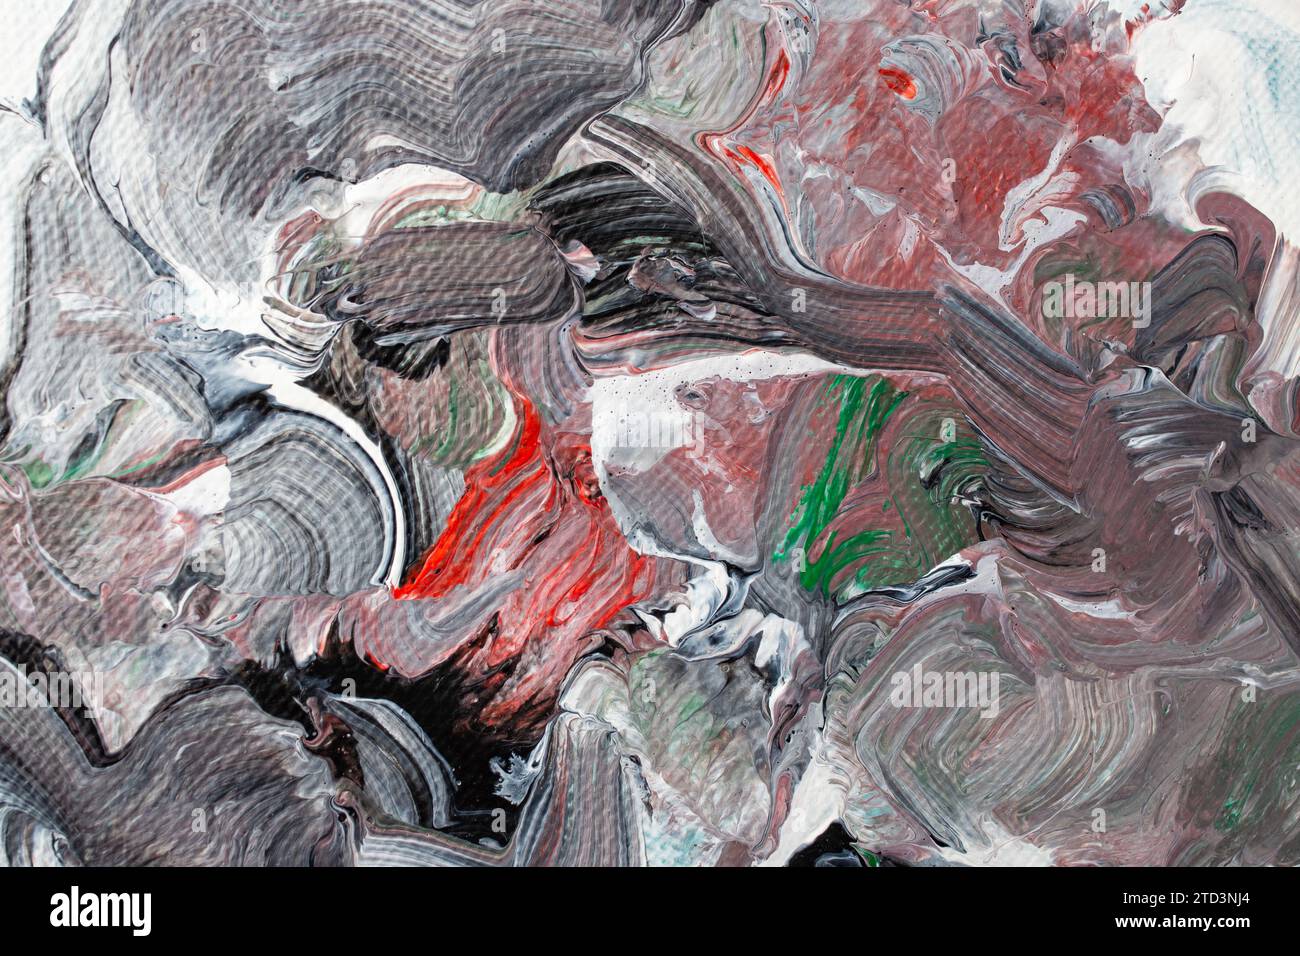 Miscela di vernice astratta con motivo casuale, rosso, verde, grigio, nero e bianco, pennellate fluide, messa a fuoco morbida in primo piano Foto Stock